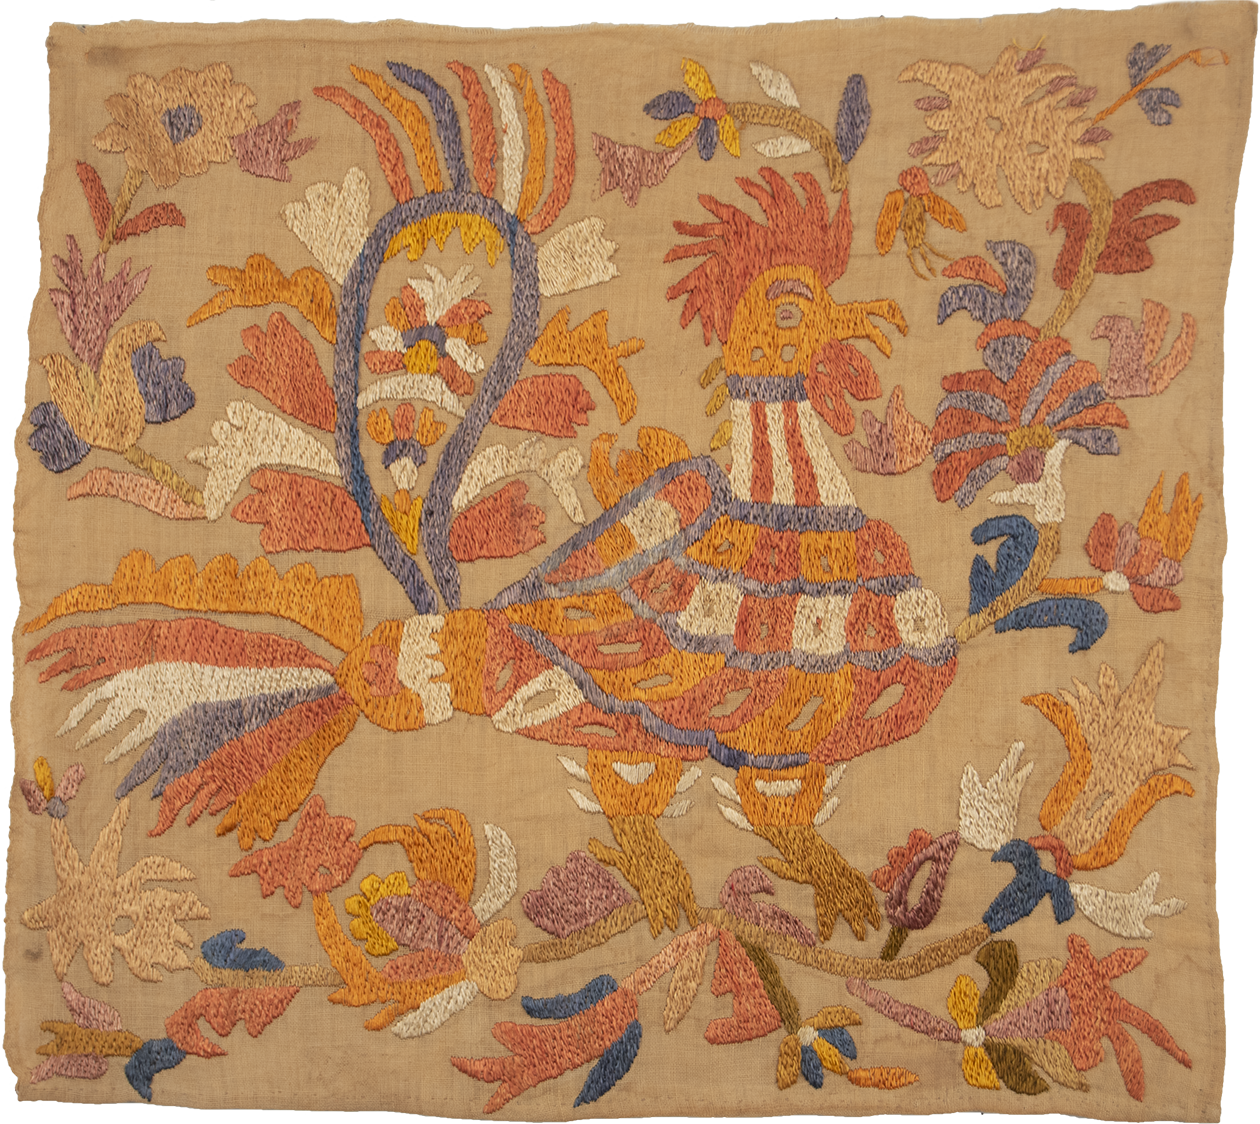 Skyros Cockerel Embroidery